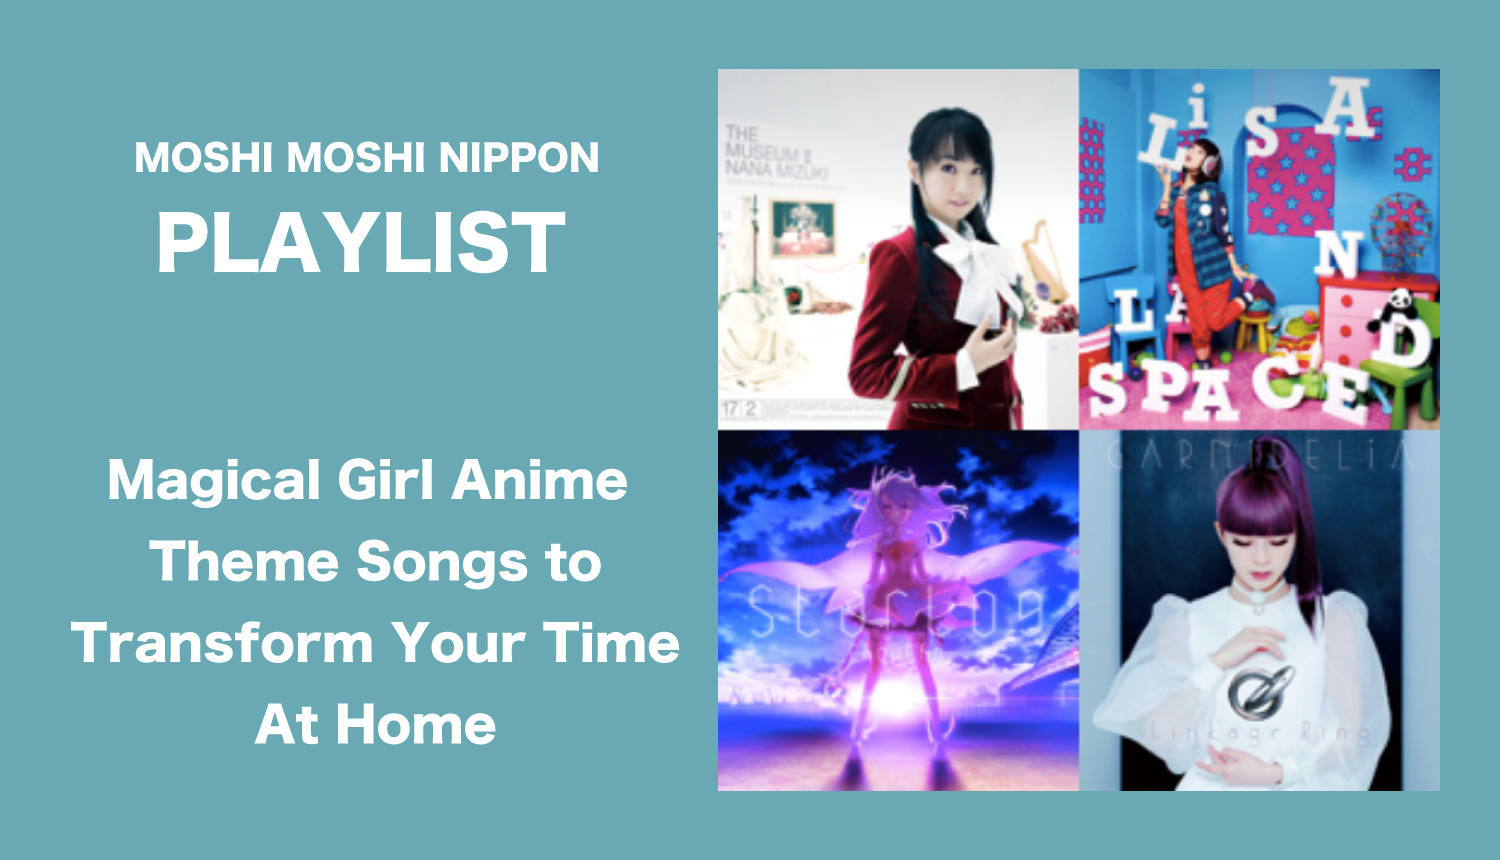 Moshi Moshi Nipponプレイリスト 今週のテーマ 魔法少女アニメのテーマソング Moshi Moshi Nippon もしもしにっぽん